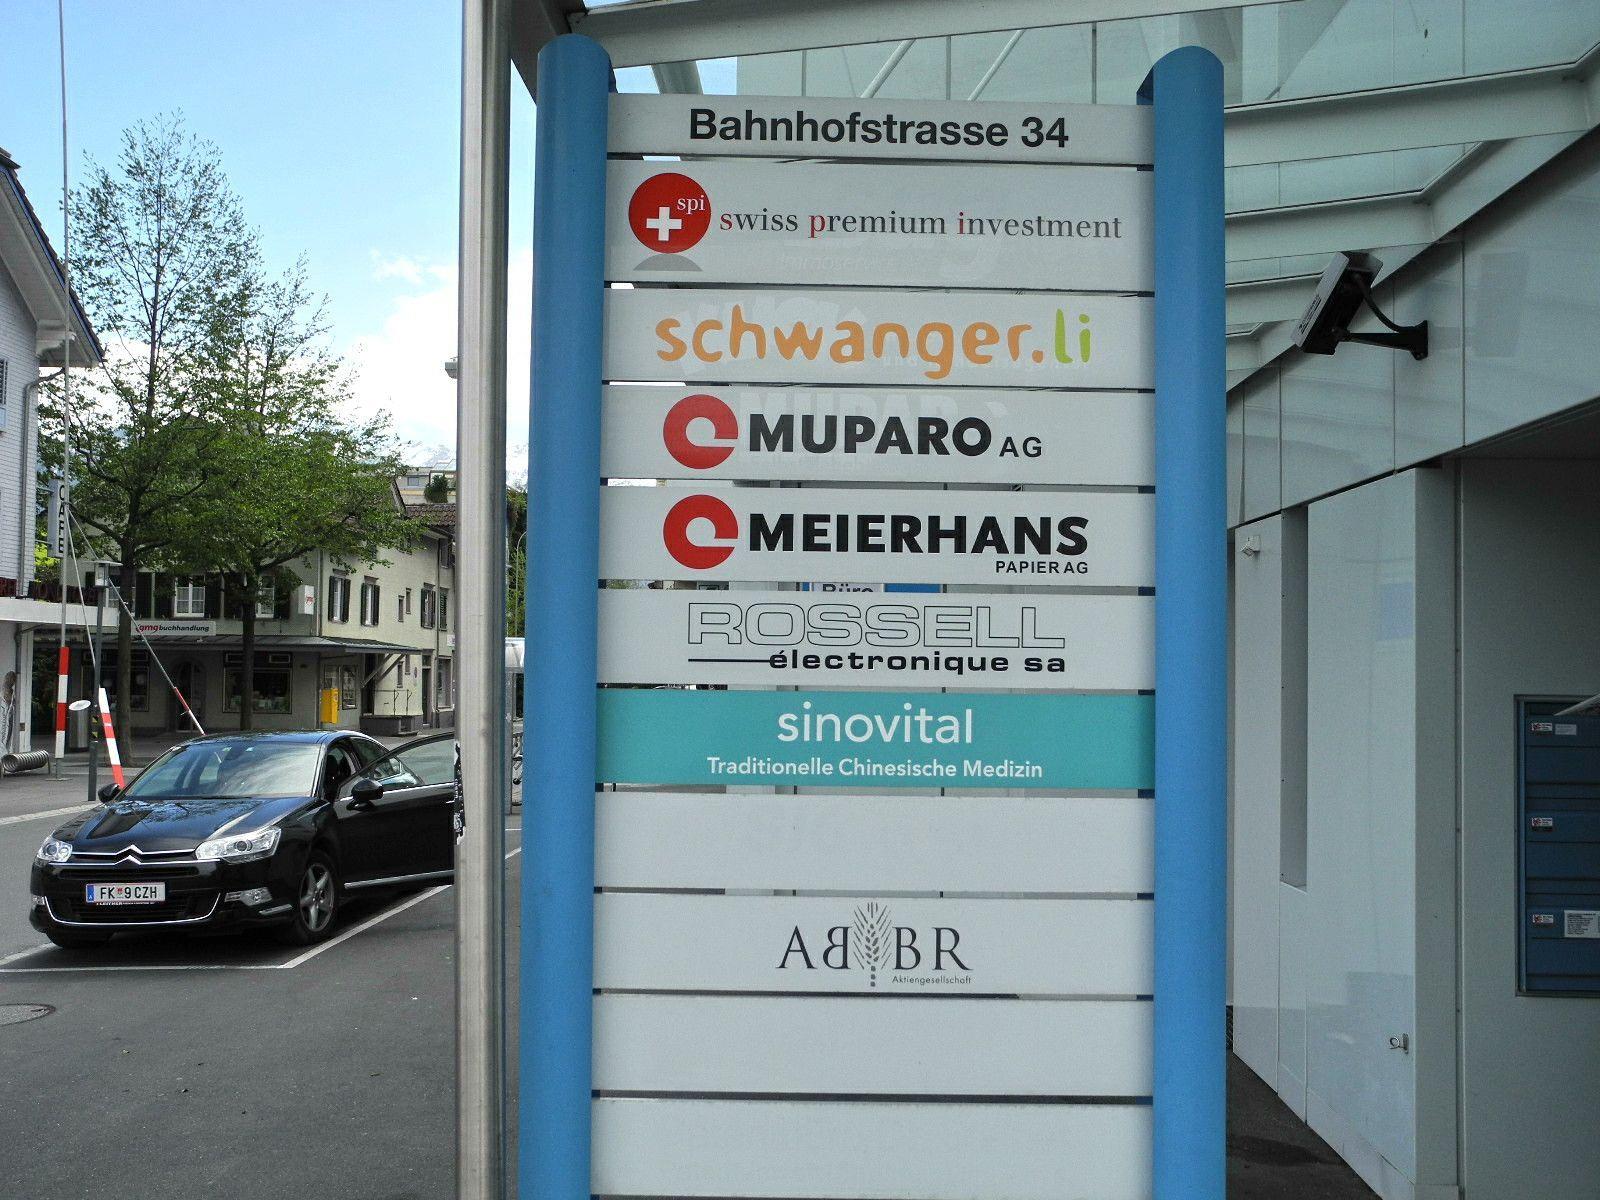 In der Bahnhofstraße 34 zieht am Mittwoch, 2. Mai die Frauenberatungsstelle "schwanger.li" ein